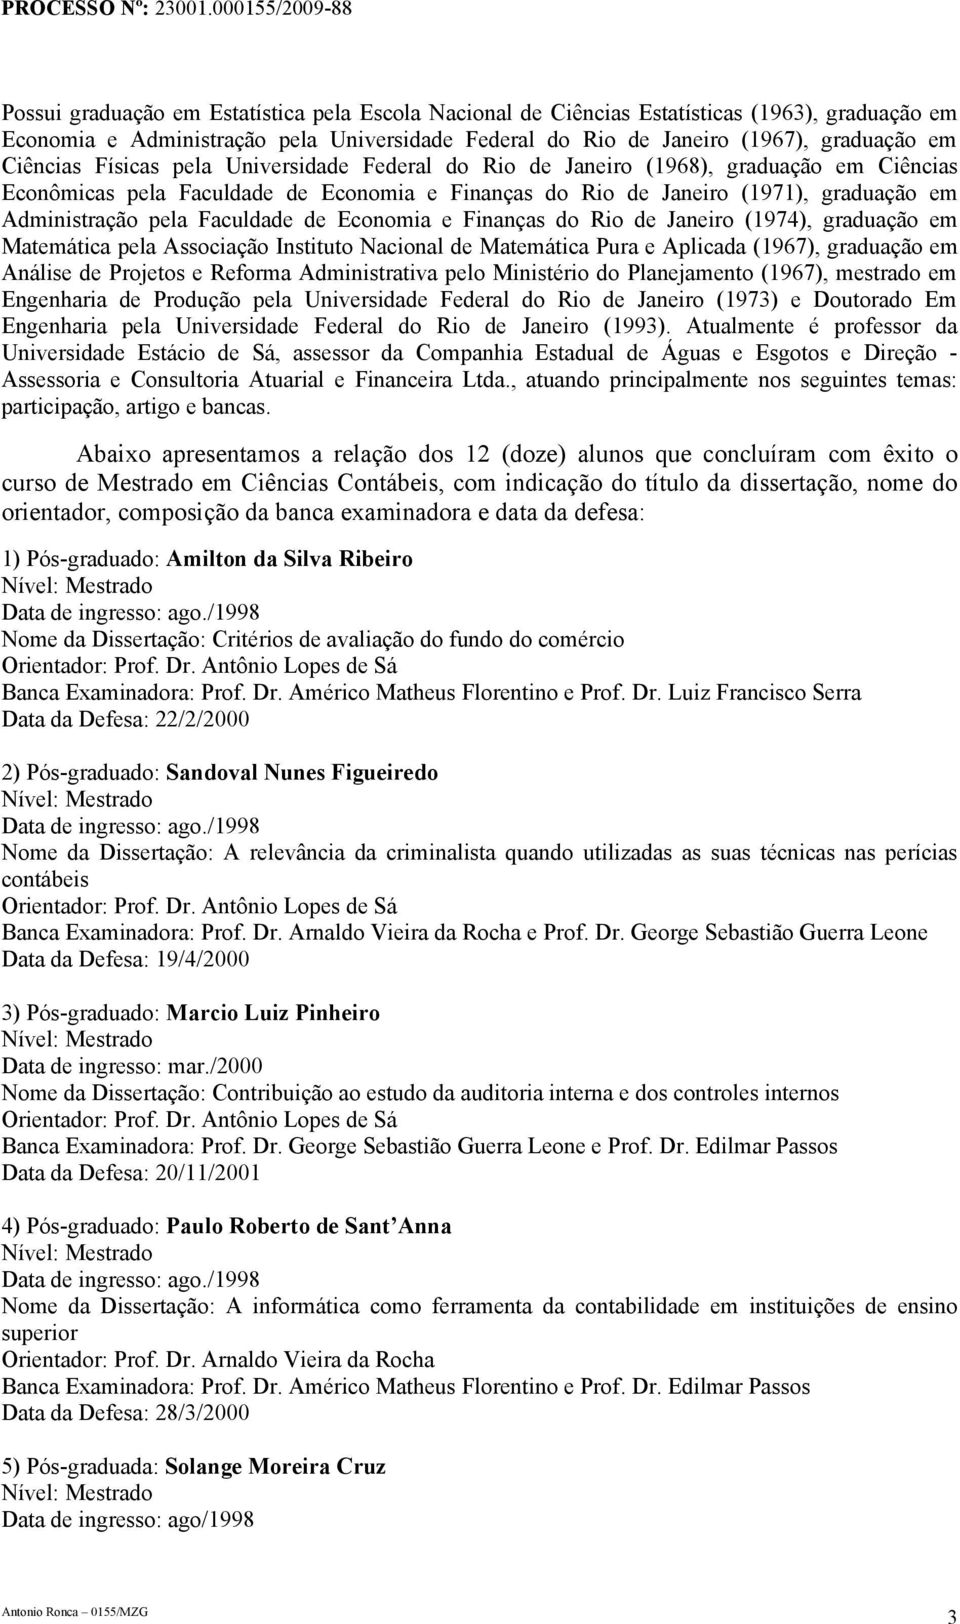 de Economia e Finanças do Rio de Janeiro (1974), graduação em Matemática pela Associação Instituto Nacional de Matemática Pura e Aplicada (1967), graduação em Análise de Projetos e Reforma